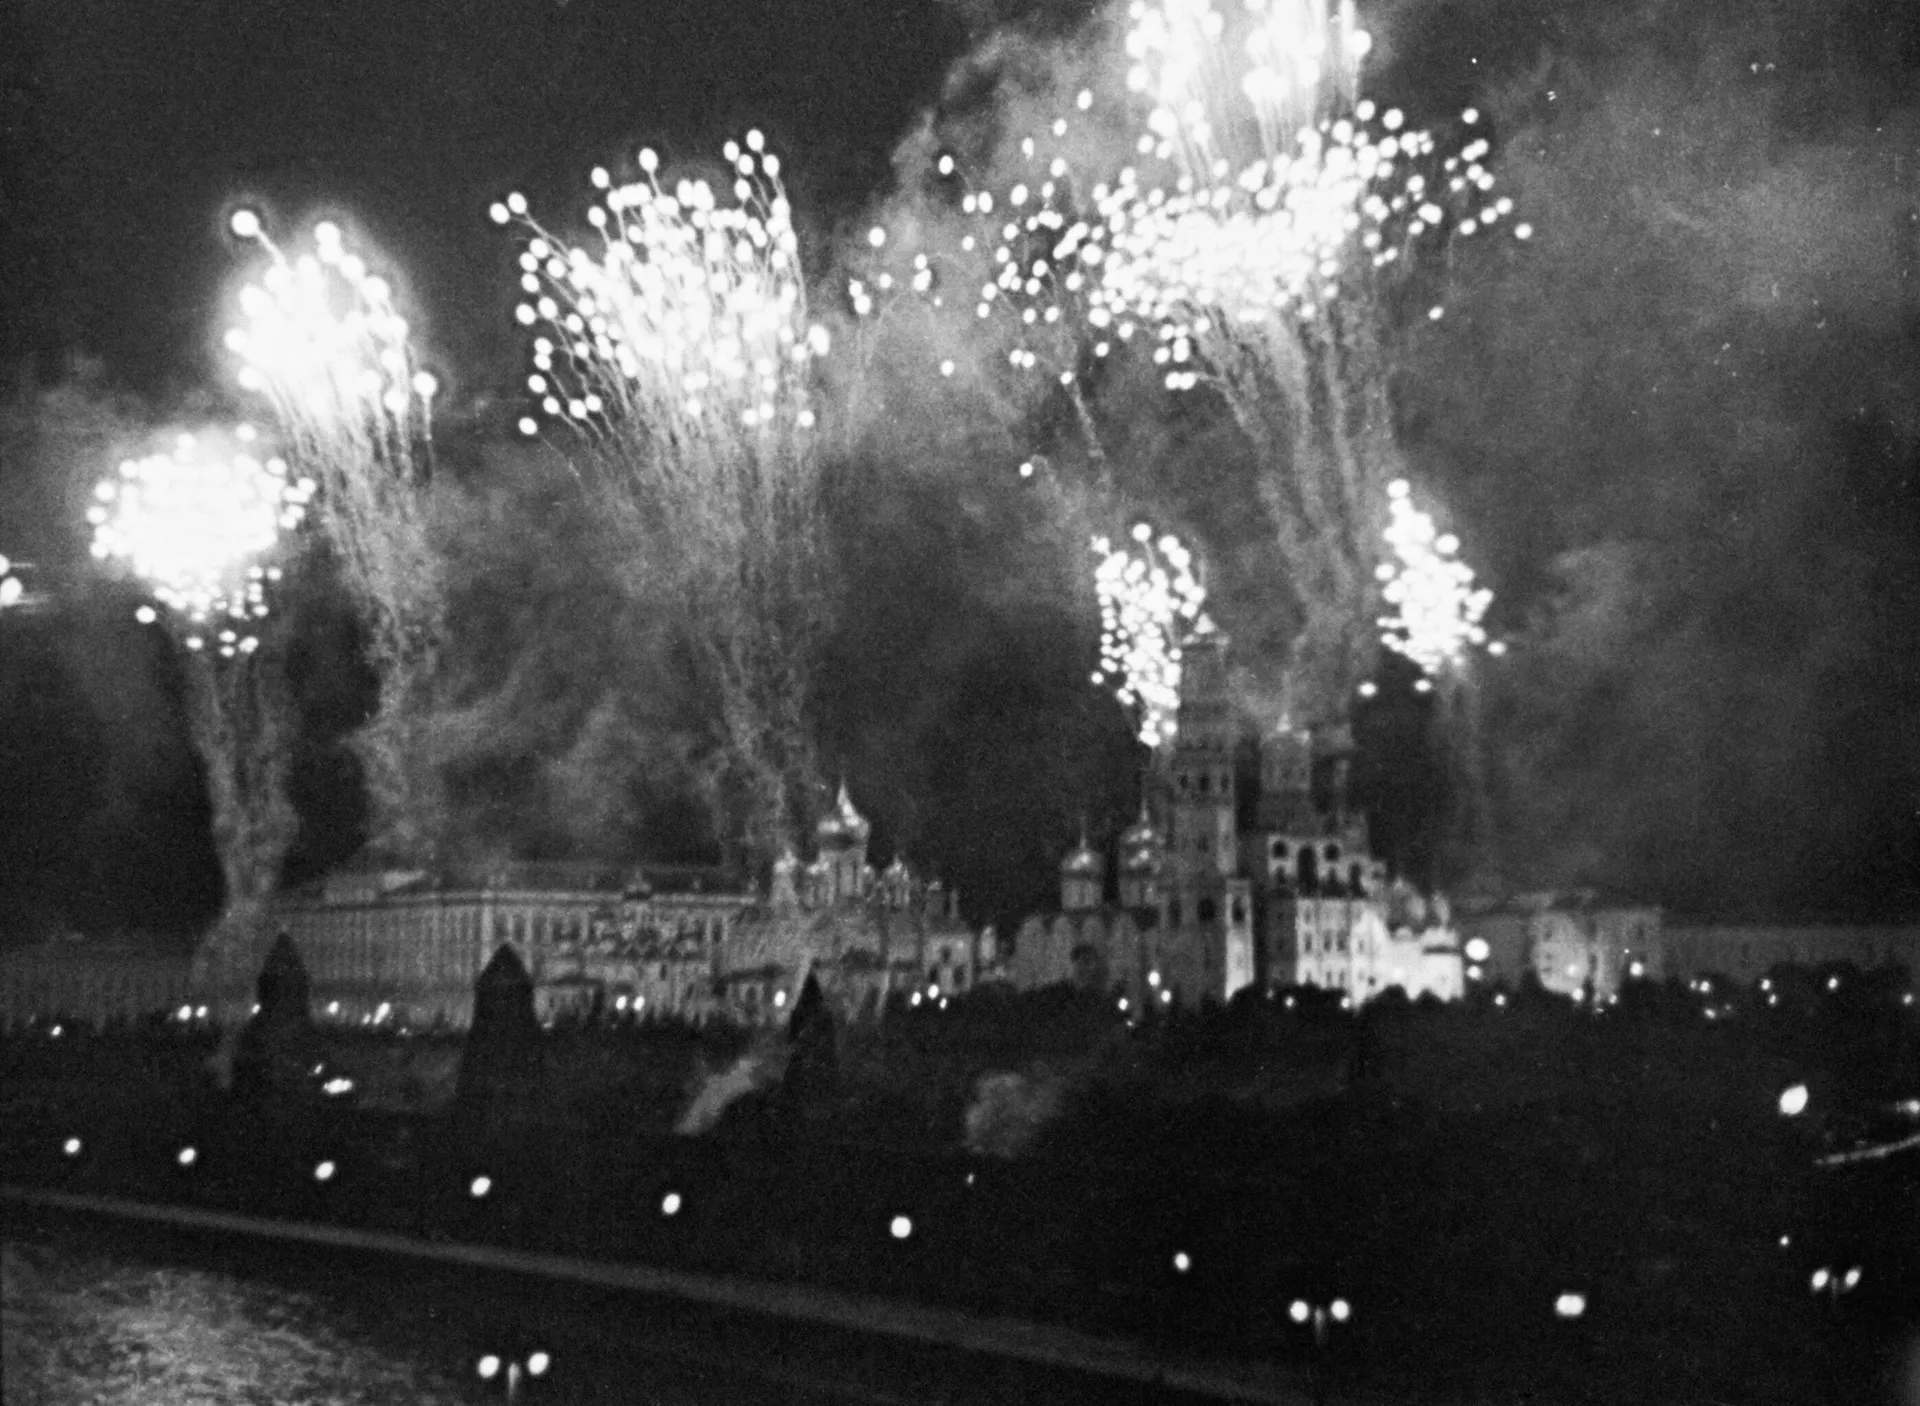 La primera salva en honor de las ciudades de Oriol y Bélgorod, liberadas durante la batalla de Kursk, tuvo lugar la noche del 5 de agosto de 1943 en Moscú - Sputnik Mundo